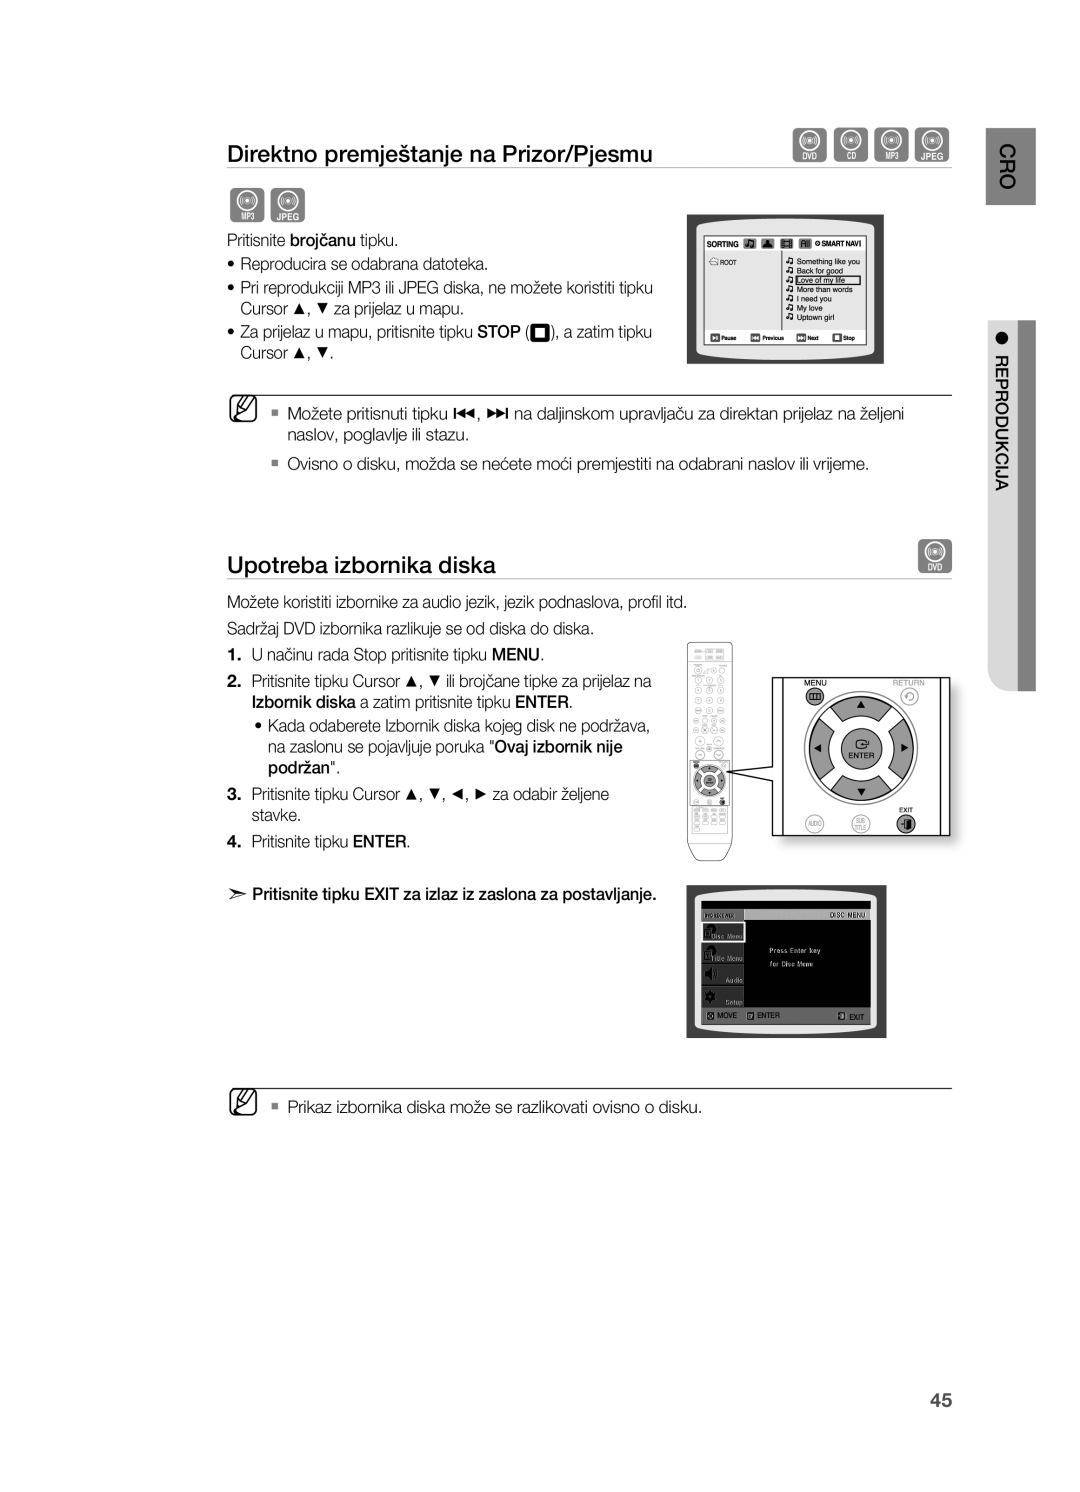 Samsung HT-Z310R/EDC, HT-TZ212R/EDC manual Upotreba izbornika diska, Direktno premještanje na Prizor/Pjesmu, MoVE, Enter 